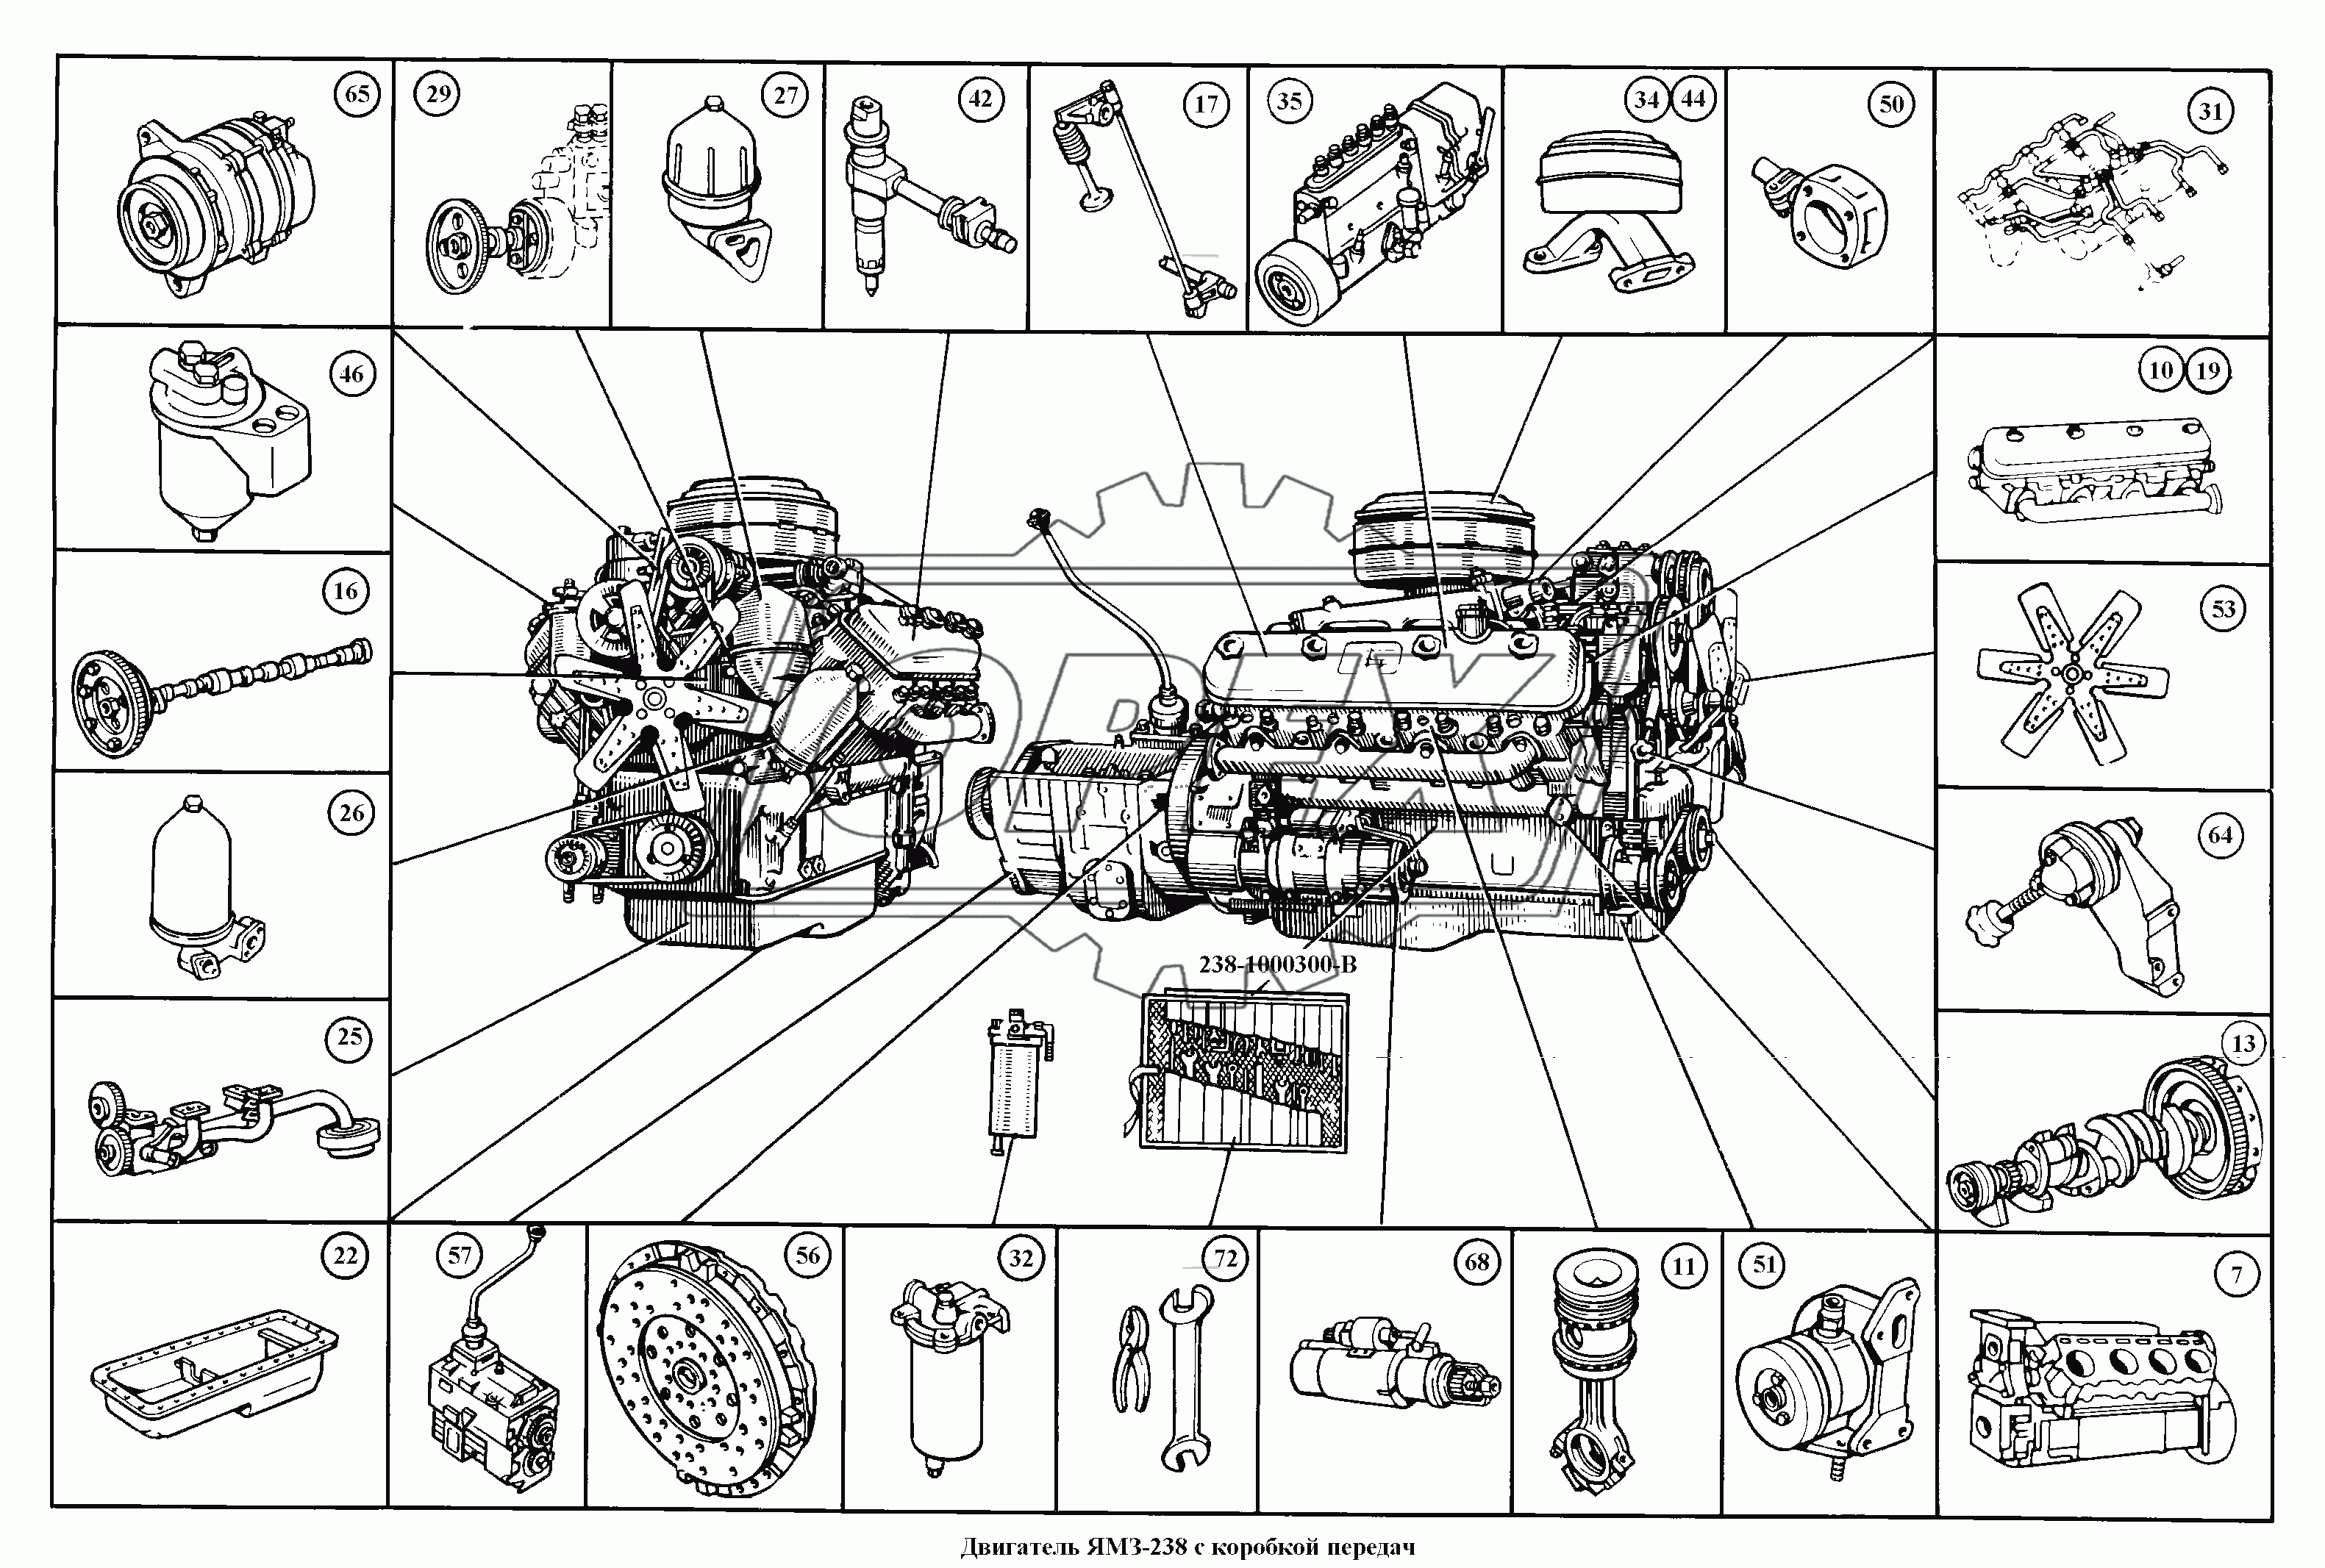 Двигатель ЯМЗ-238 с коробкой передач